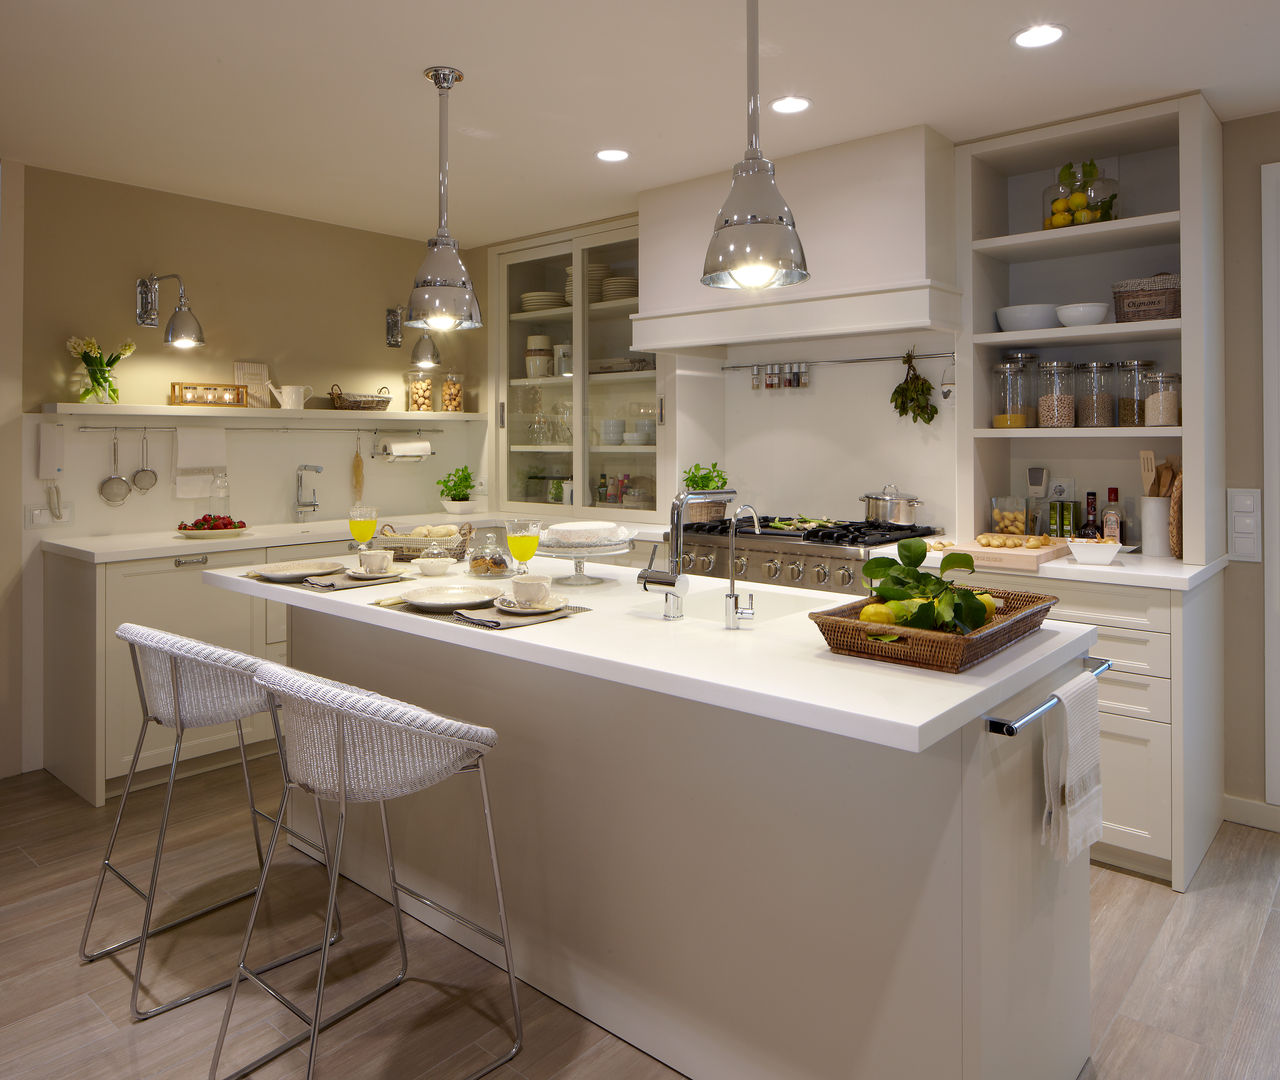 Cocina de diseño atemporal, DEULONDER arquitectura domestica DEULONDER arquitectura domestica Eclectic style kitchen